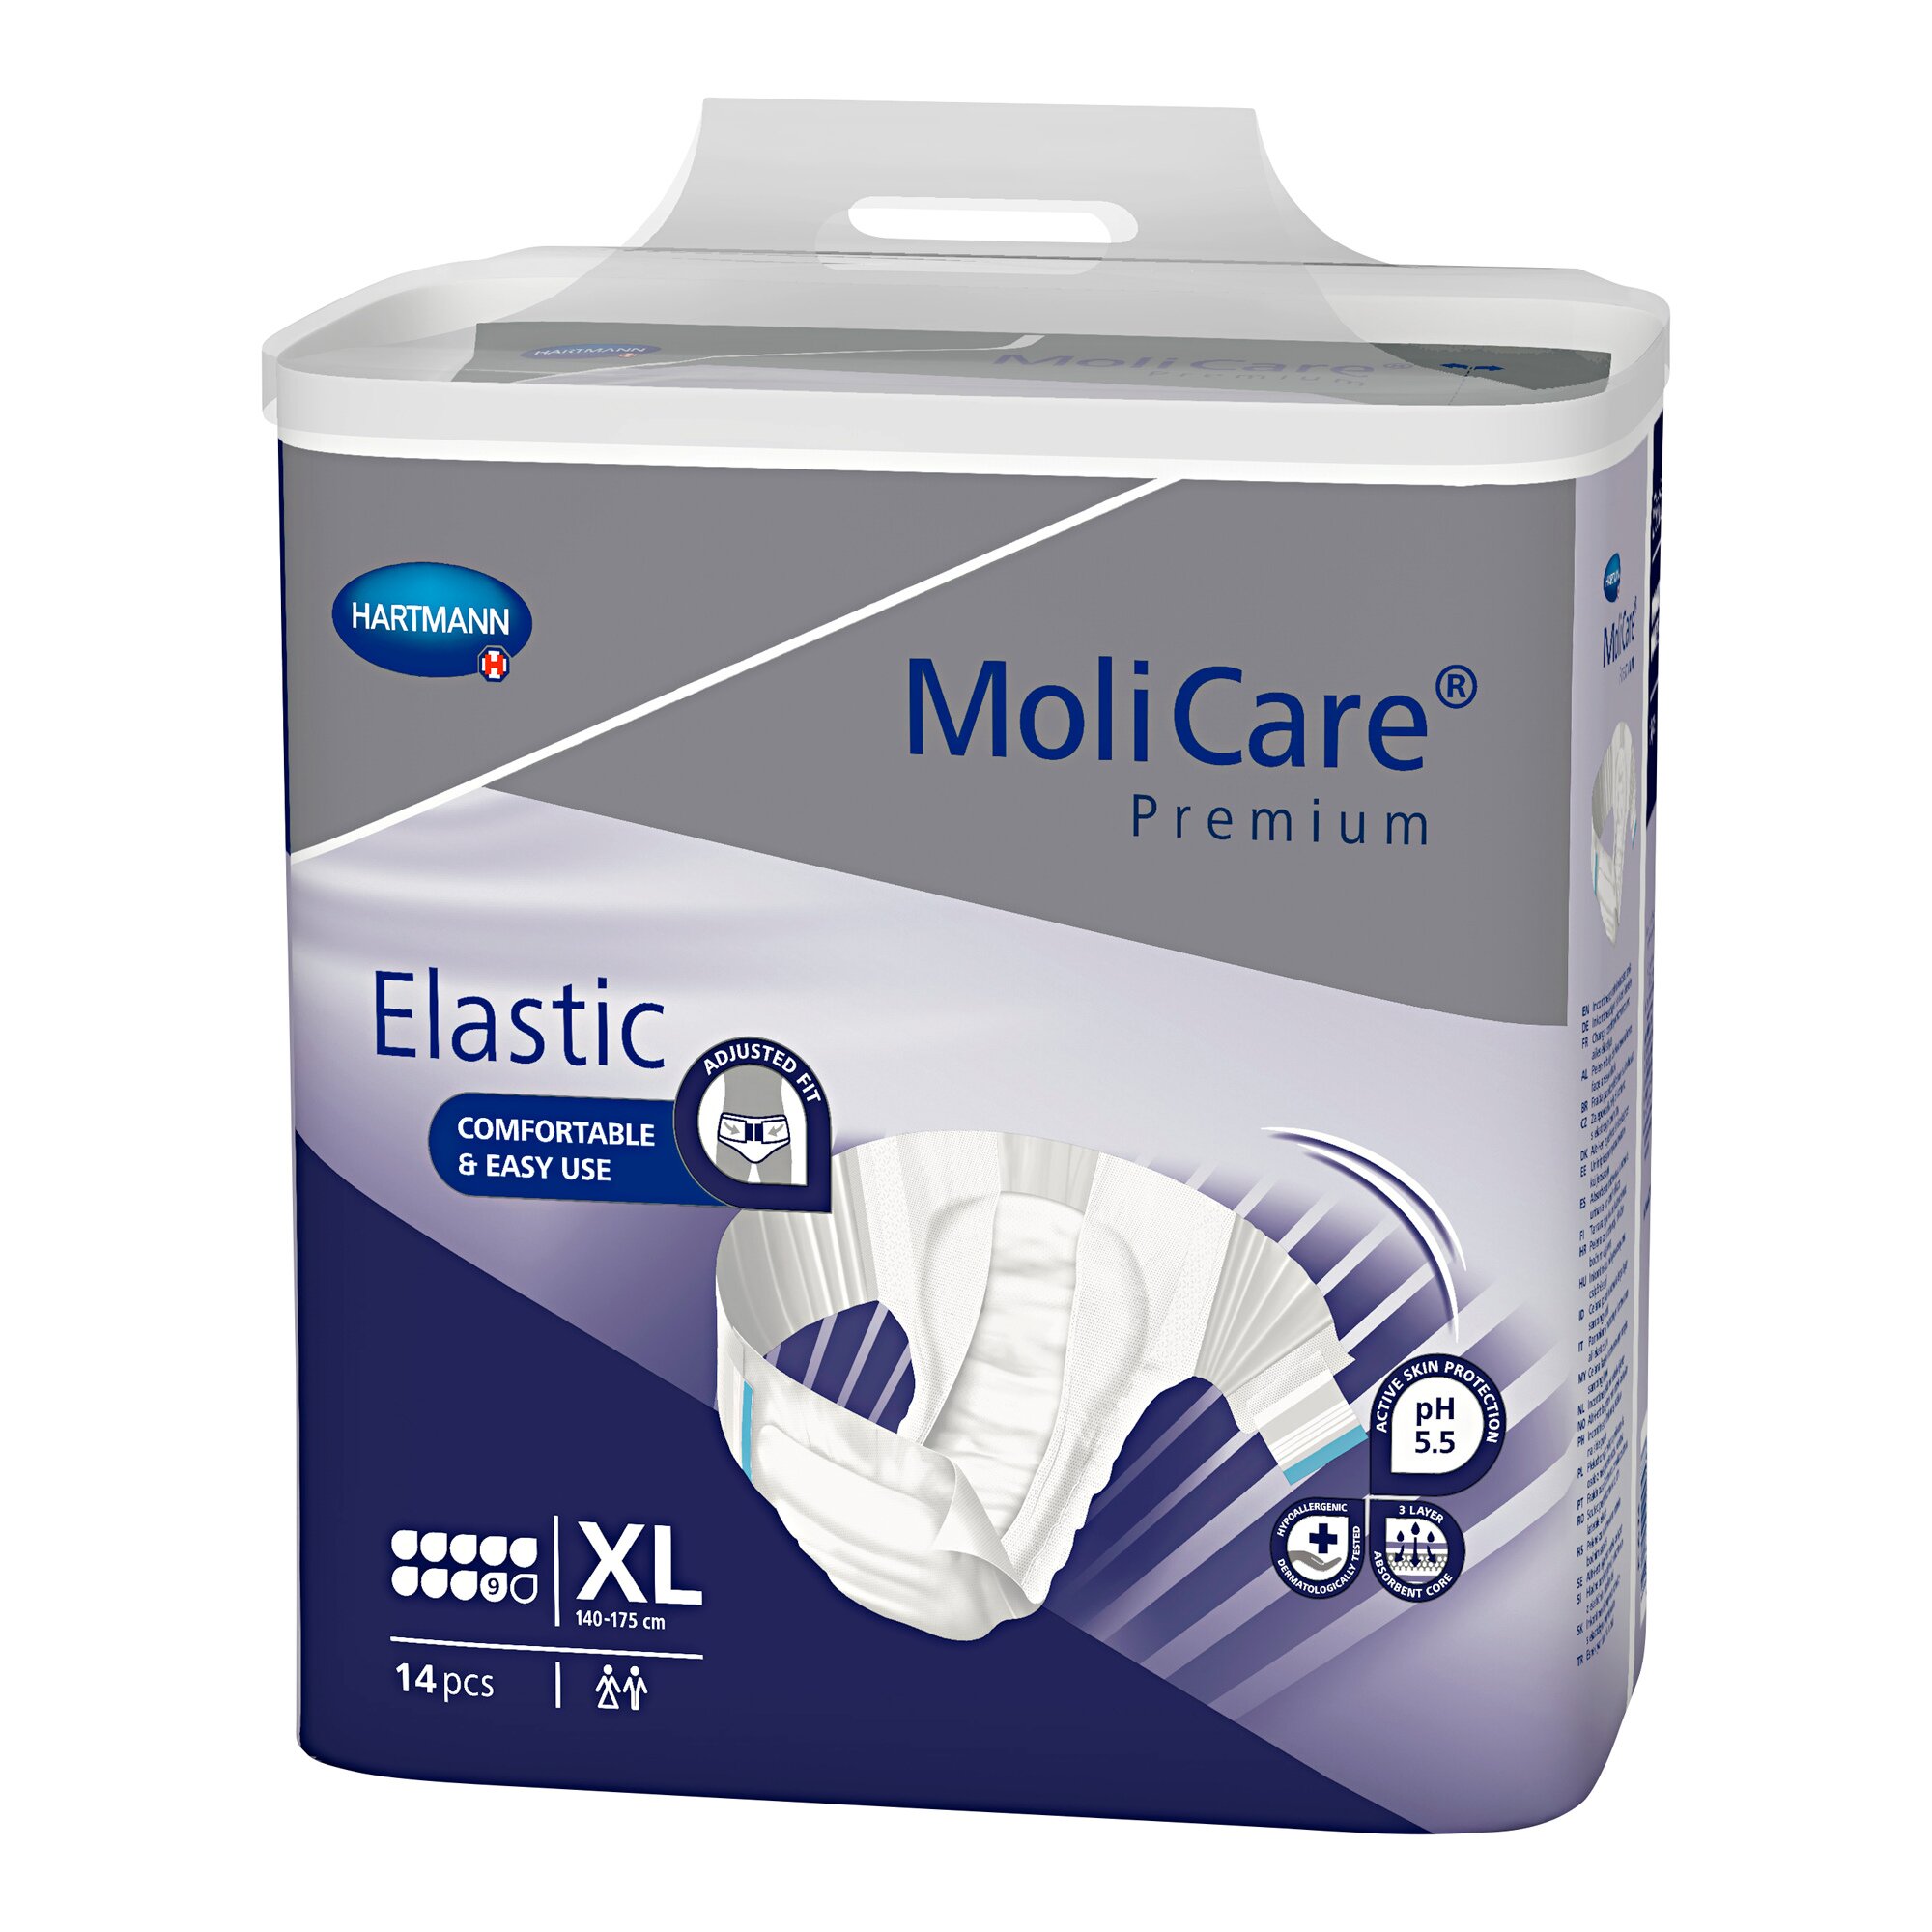 MoliCare Premium Elastic, Saugleistung 2.500 ml, Größe: XL